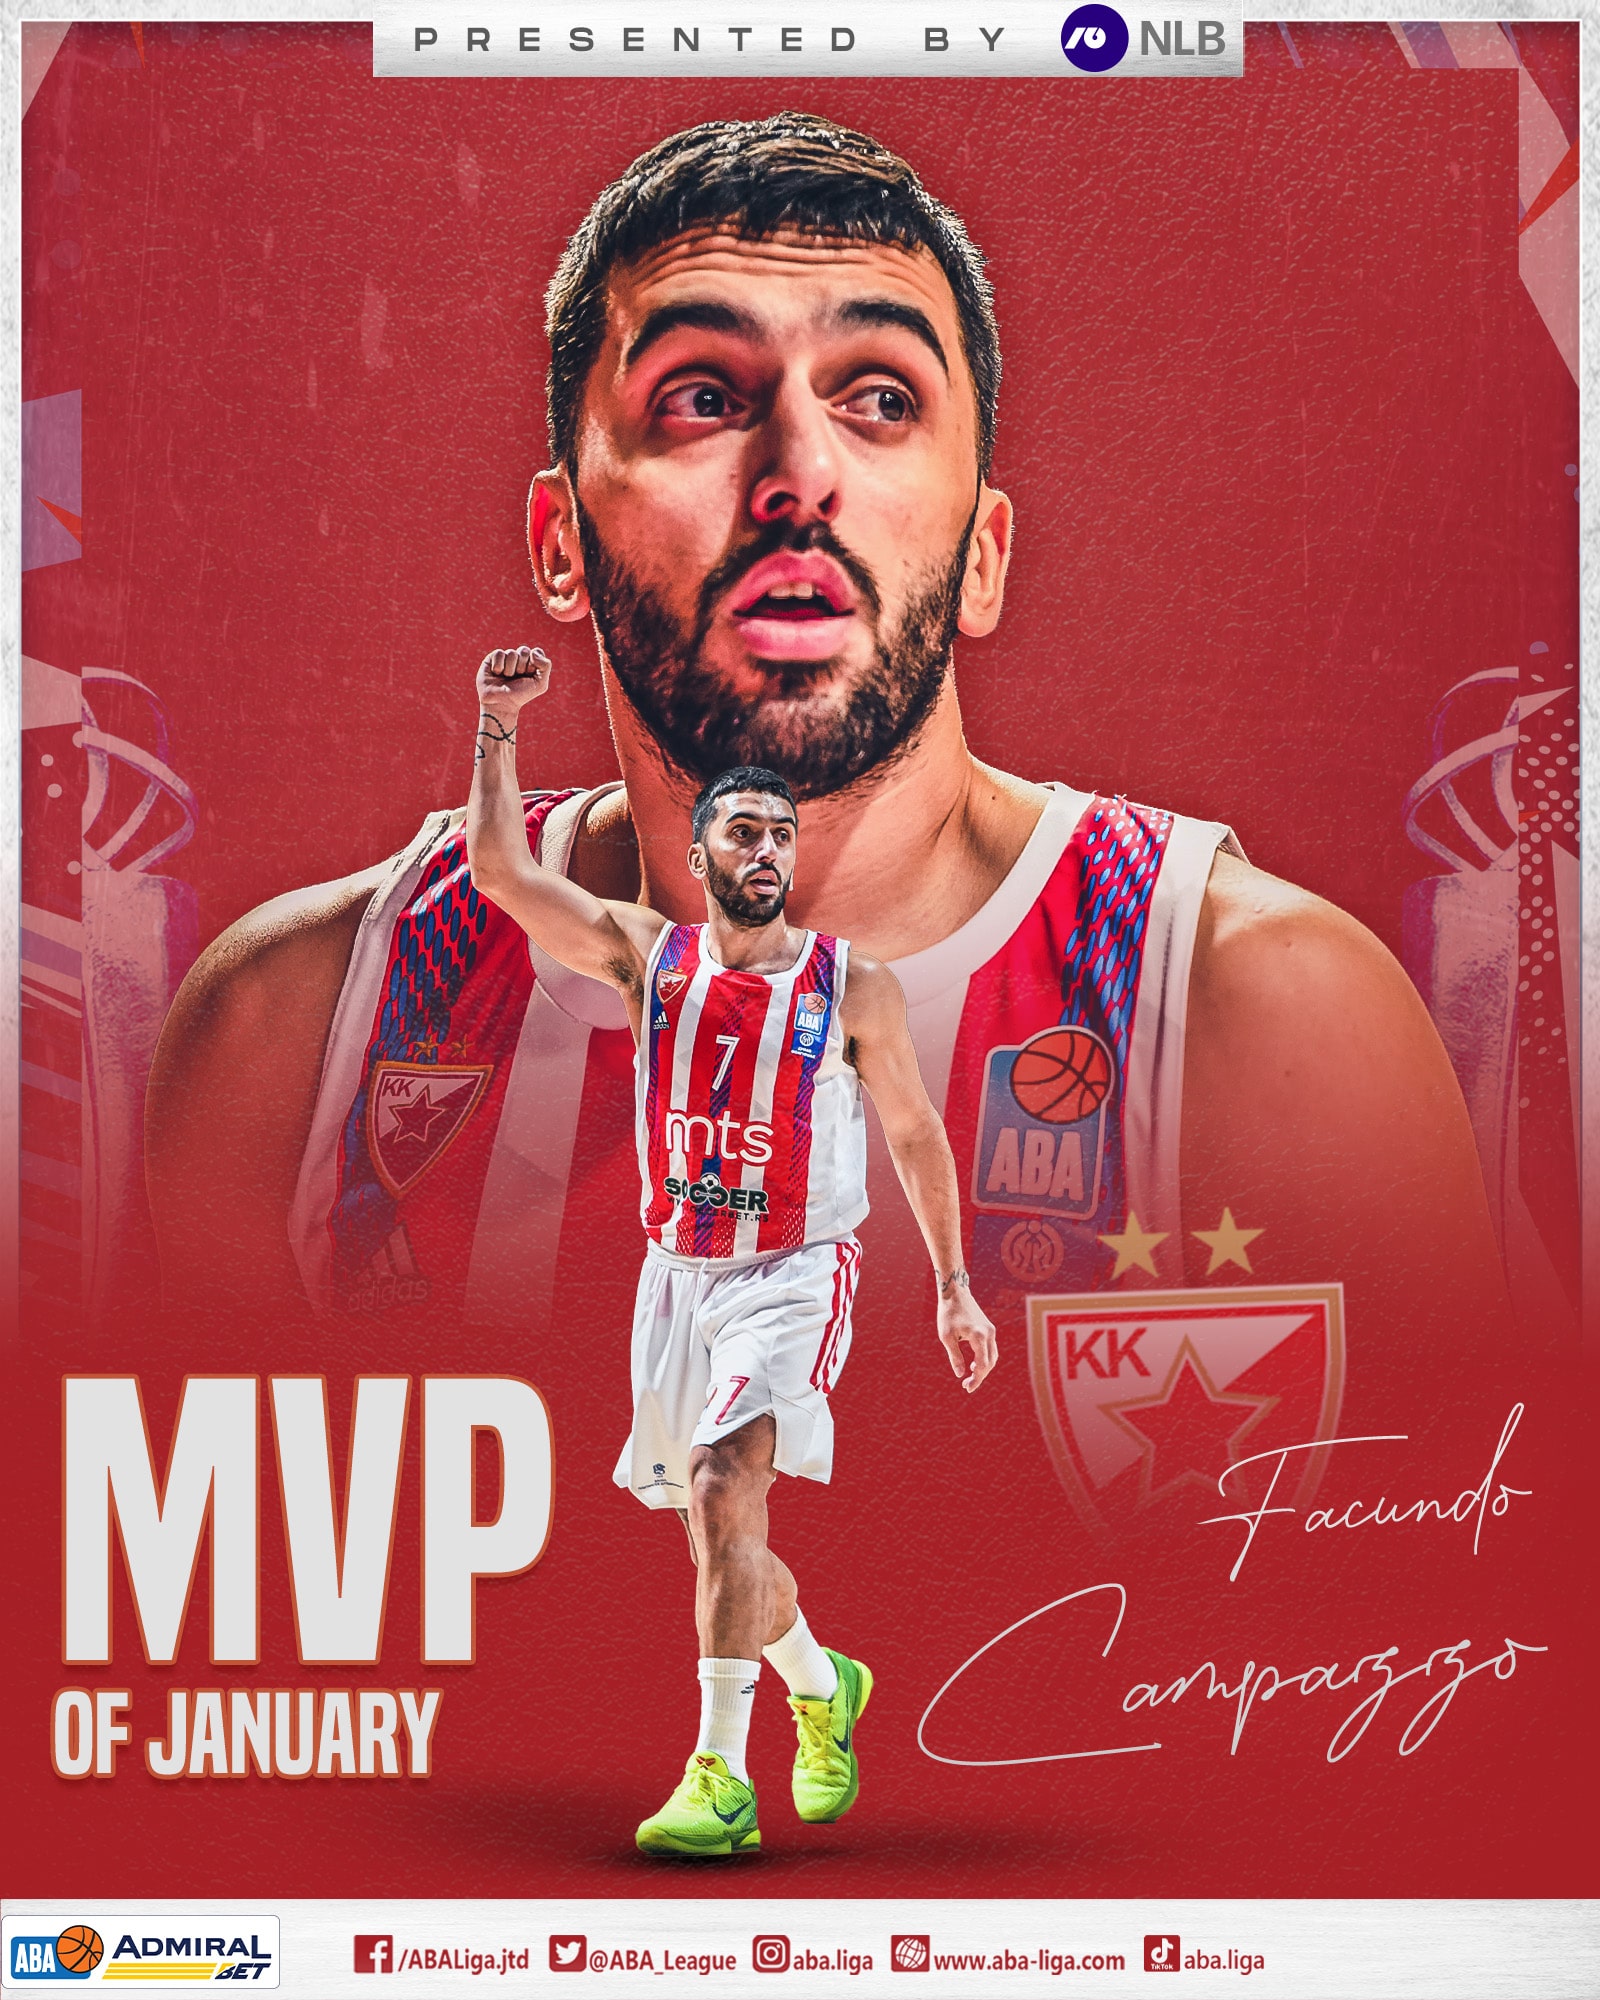 Como los viejos tiempos: Facundo Campazzo fue MVP de la Supercopa